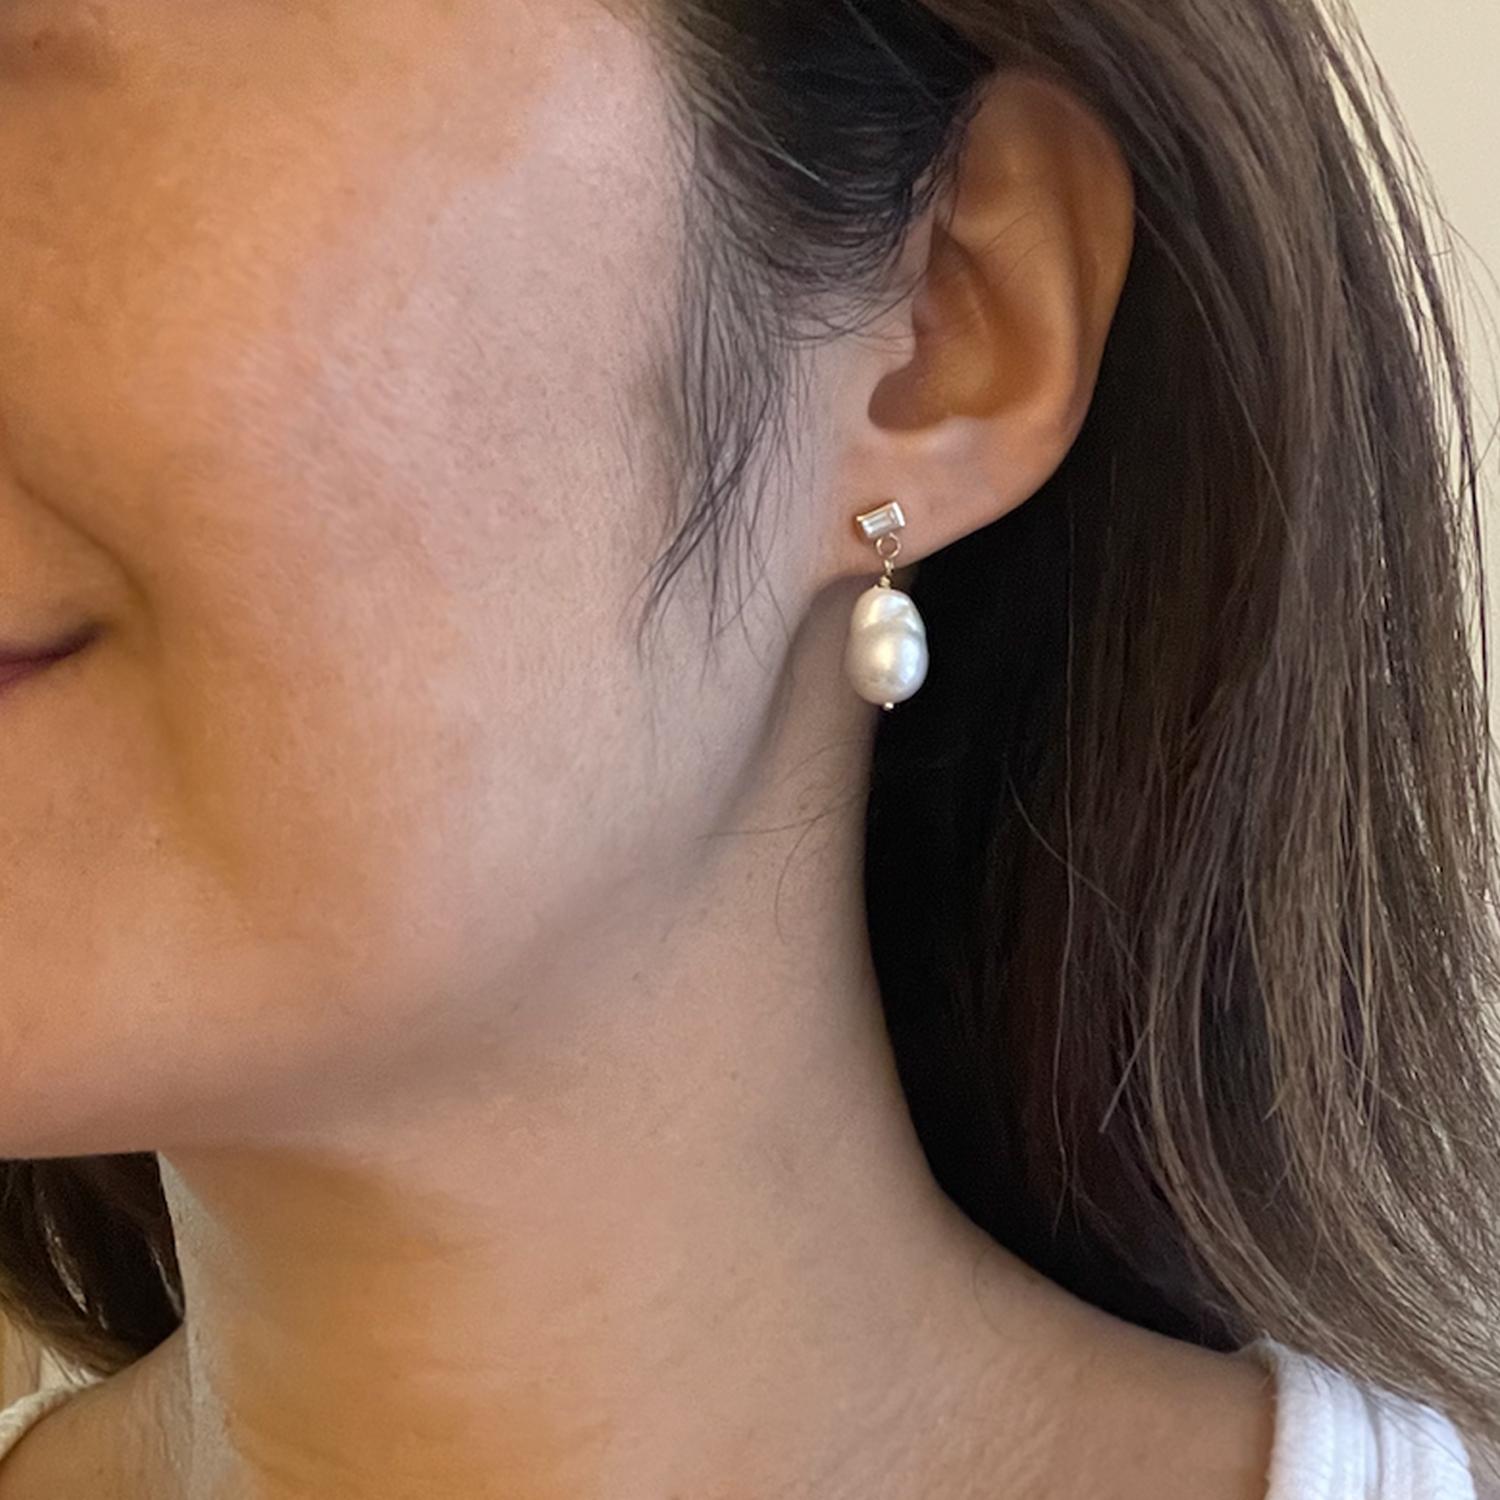 Dans ces boucles d'oreilles perles lustrées, une magnifique perle baroque de taille moyenne est suspendue à un clou d'oreille en diamant baguette de qualité VS1. Les perles sont les seules pierres précieuses qui proviennent d'un organisme vivant, et